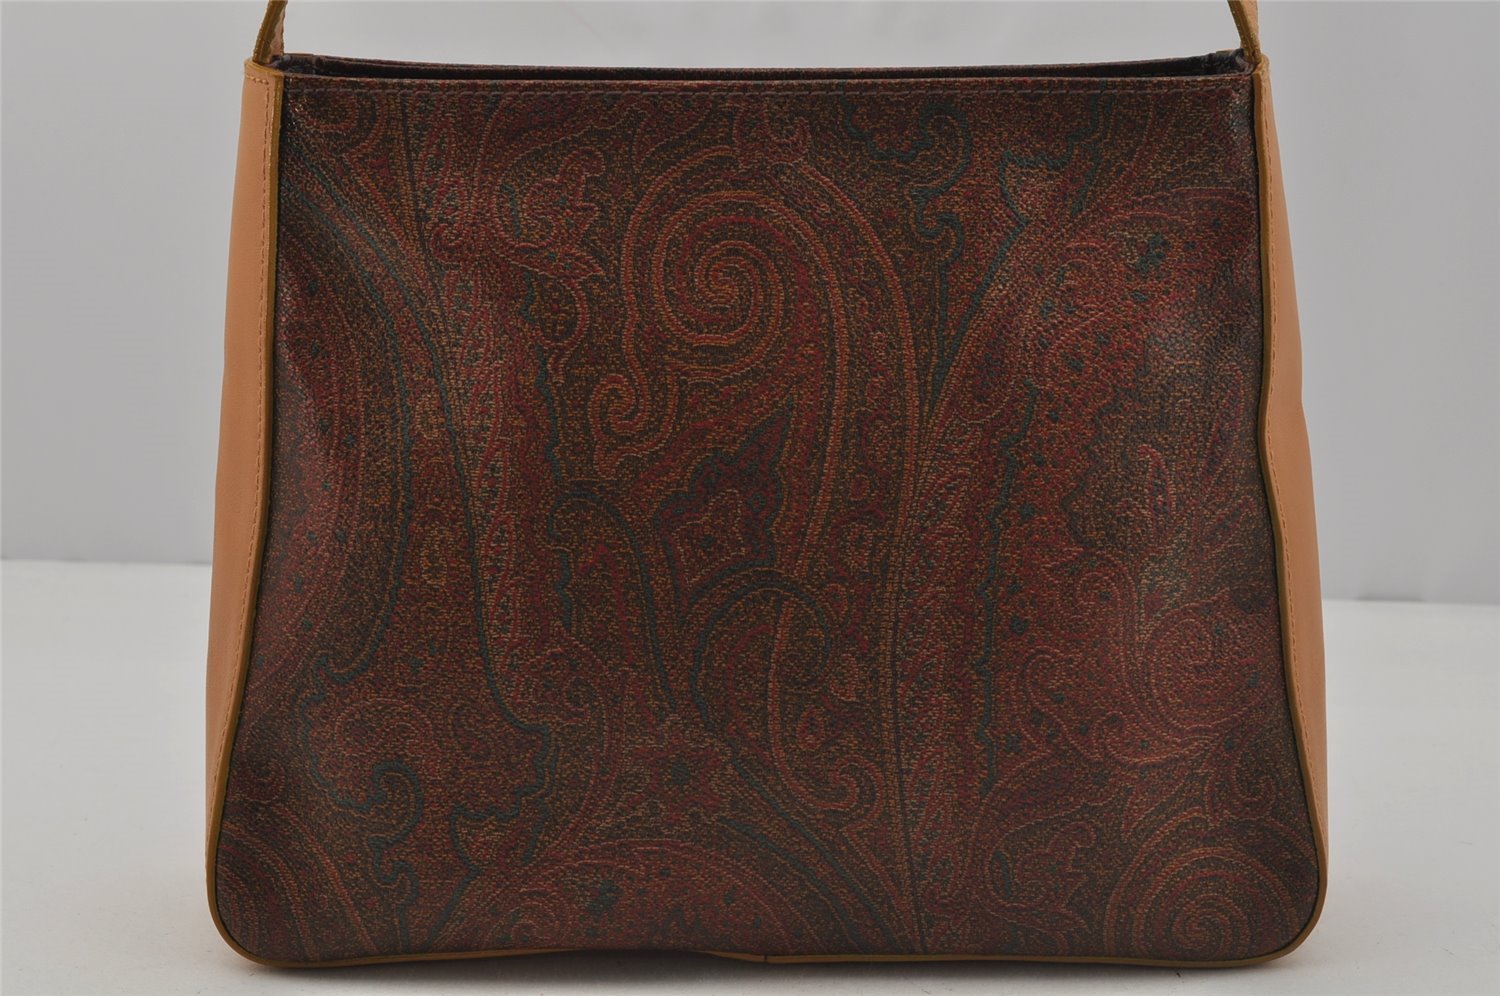 Authentic ETRO Paisley Shoulder Hand Bag Purse PVC Leather Bordeaux Red 1679J